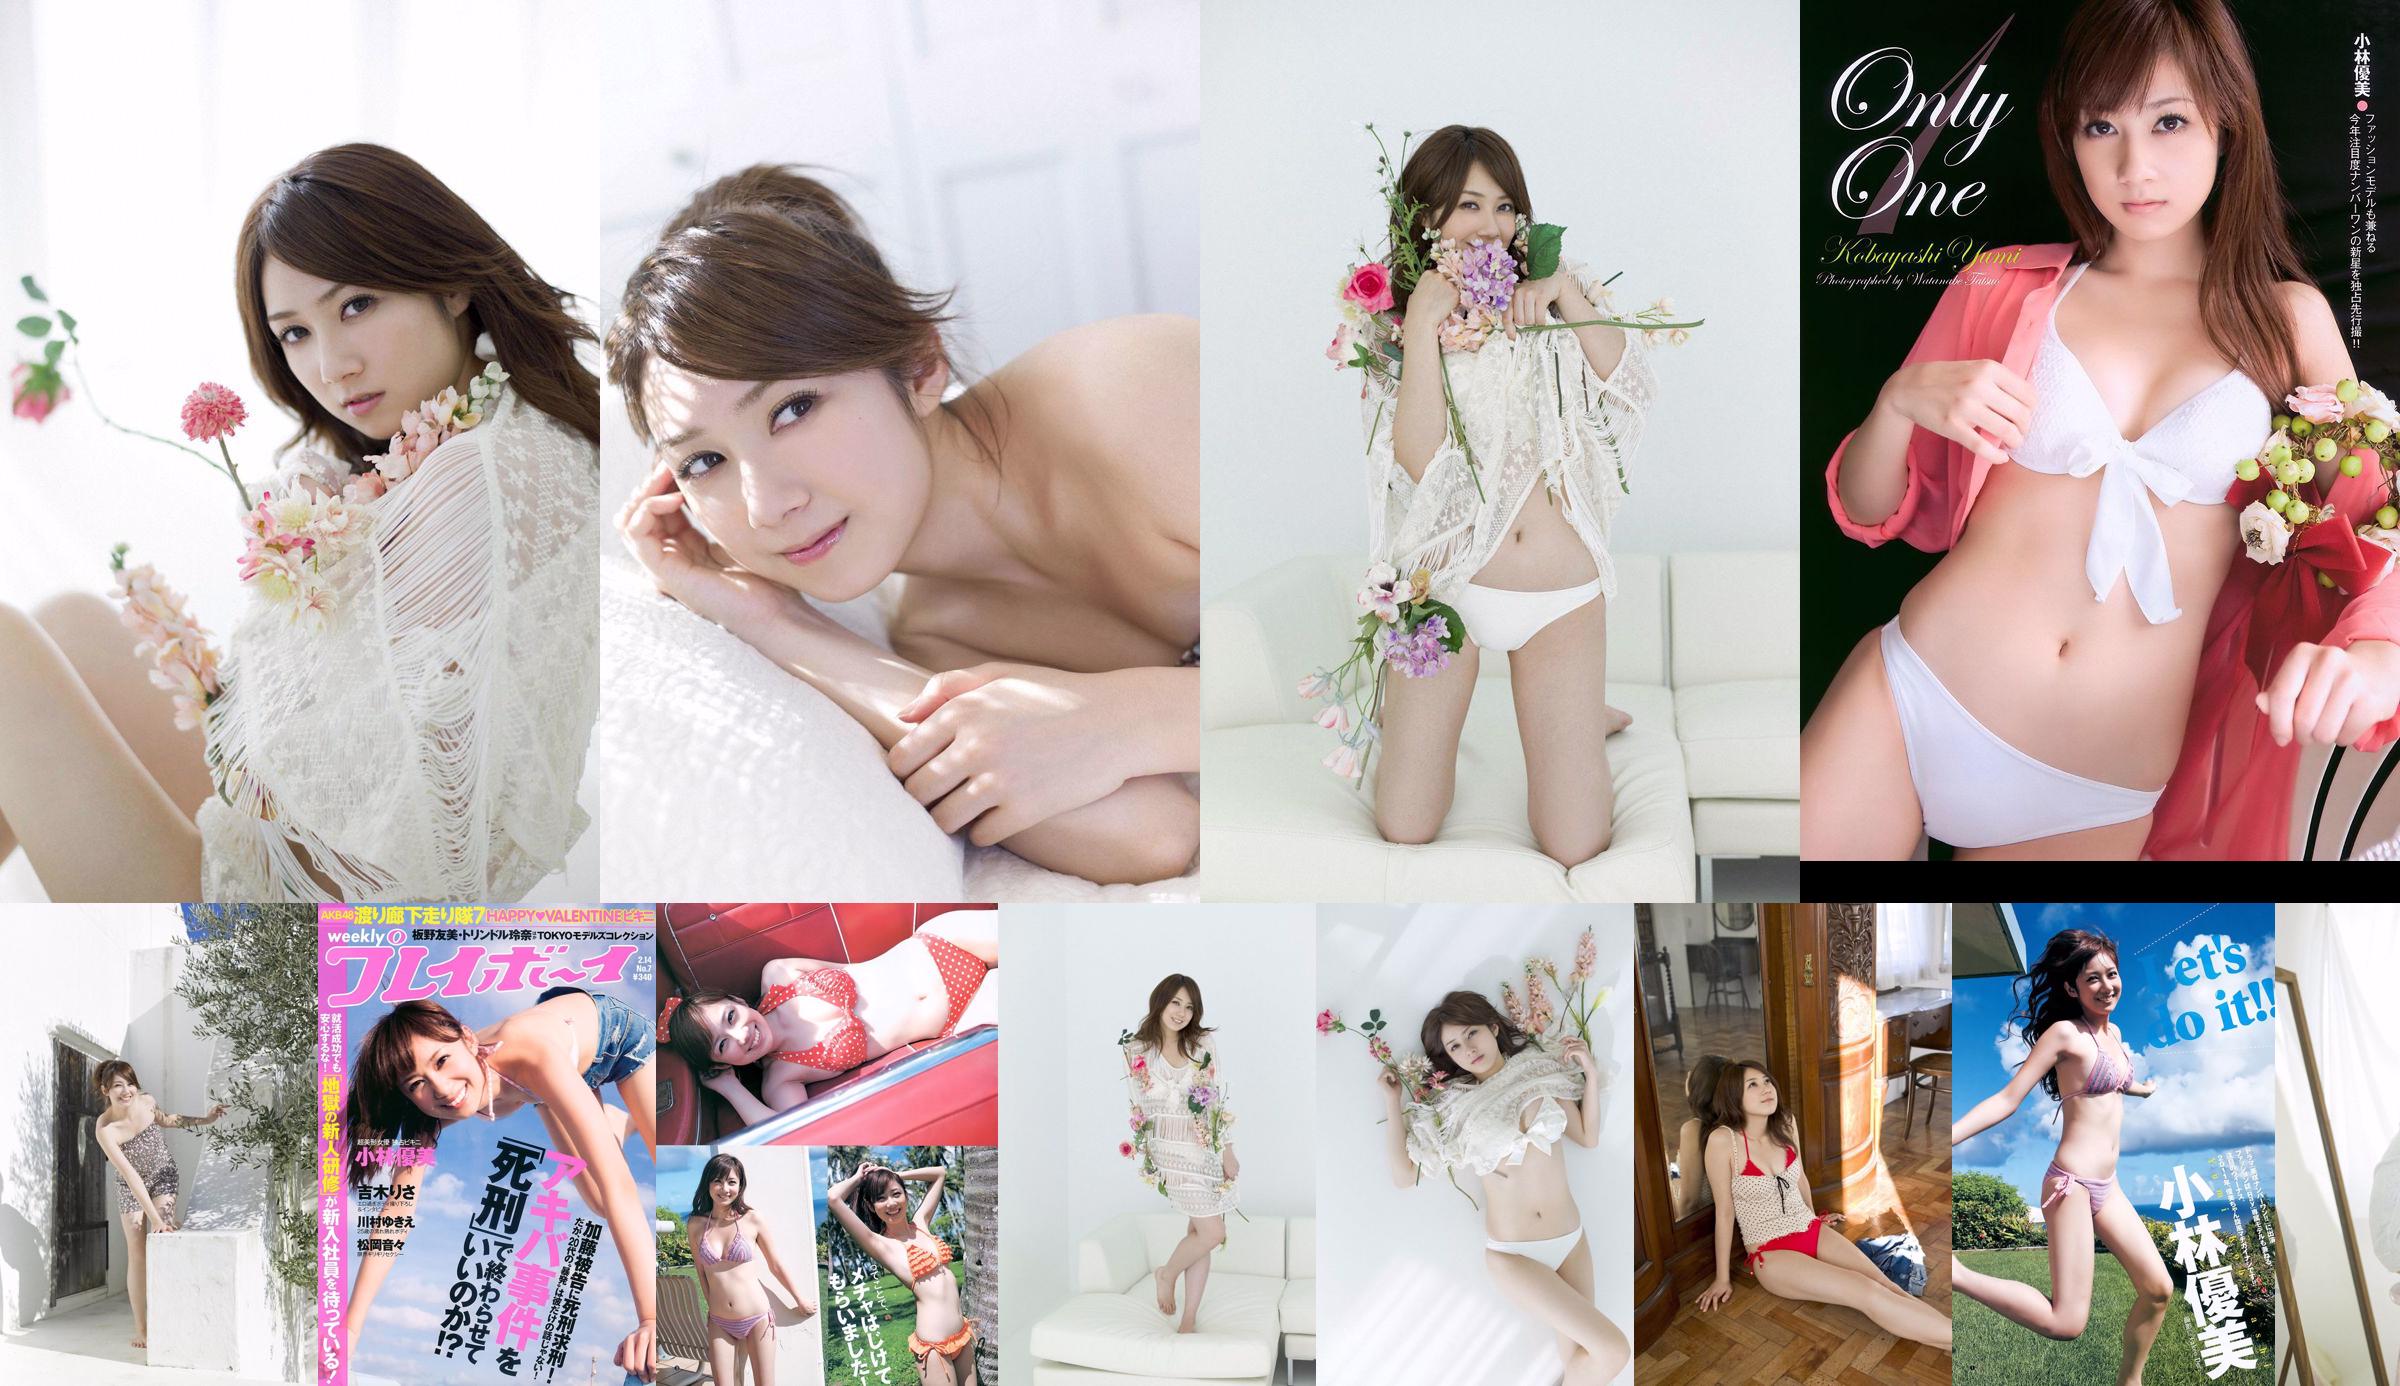 Kobayashi Yumi Shinoda Mariko [Wekelijkse Young Jump] 2011 No.11 Photo Magazine No.e391cf Pagina 1